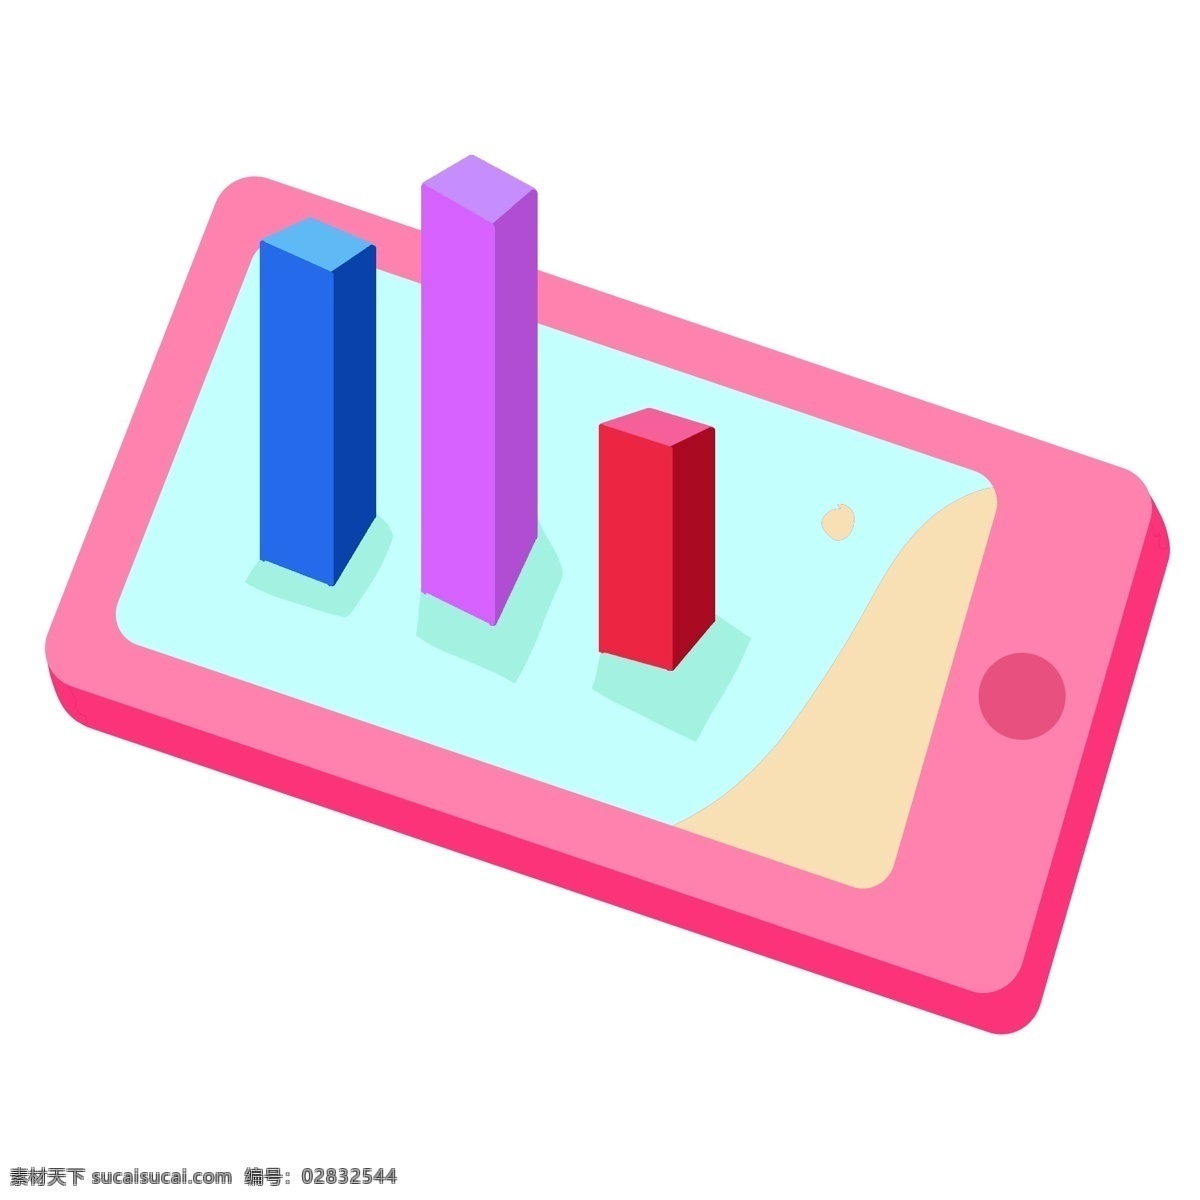 d 扁平化 彩色 图表 2.5d图表 扁平化图表 立体图表 粉色的手机 彩色的图表 分析图表 漂亮的图表